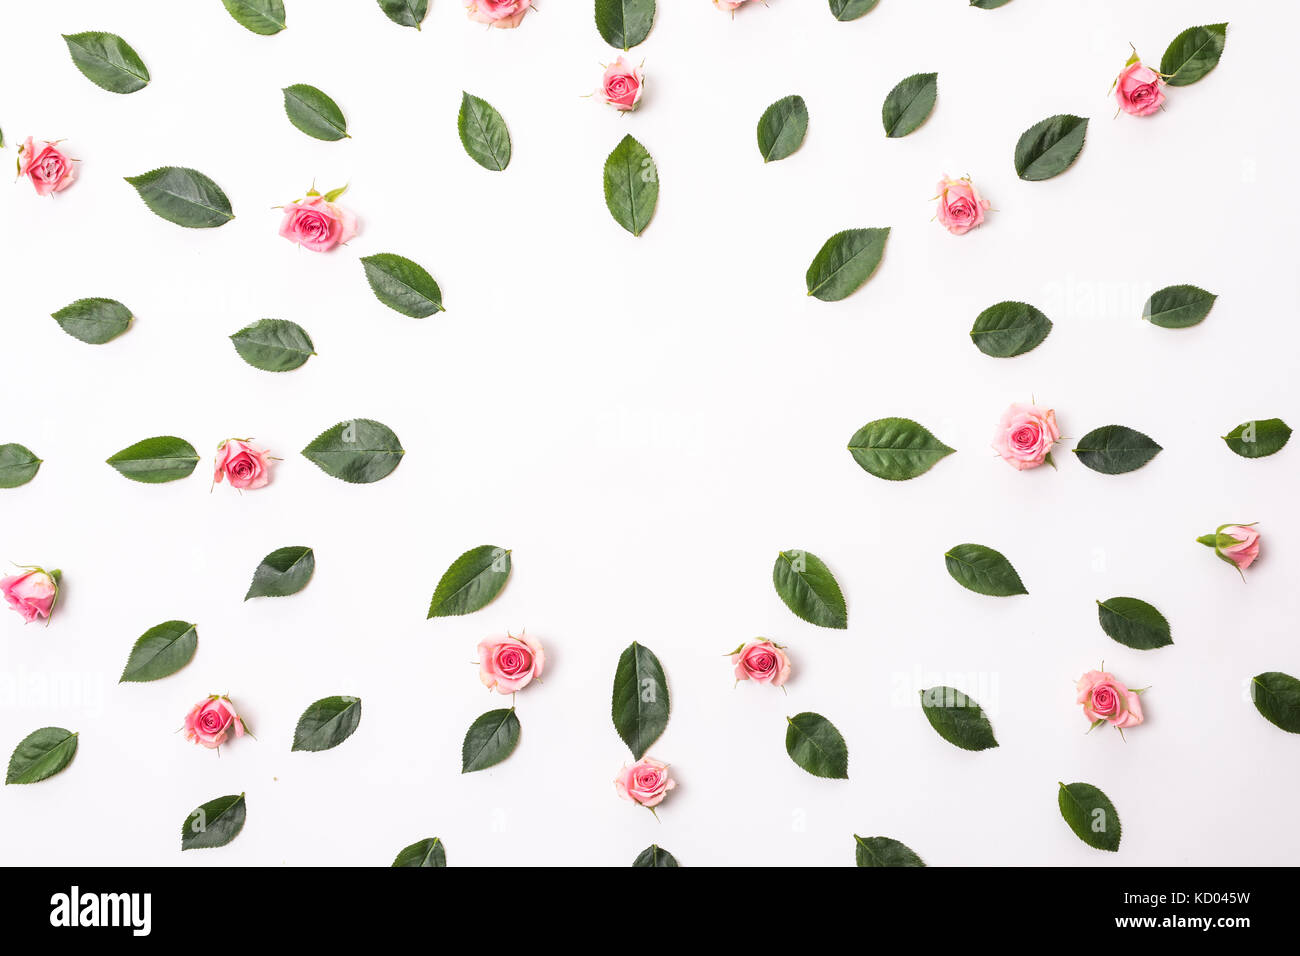 Blumen Zusammensetzung. Rahmen mit rosa Blüten und Eukalyptus Filialen. Stockfoto